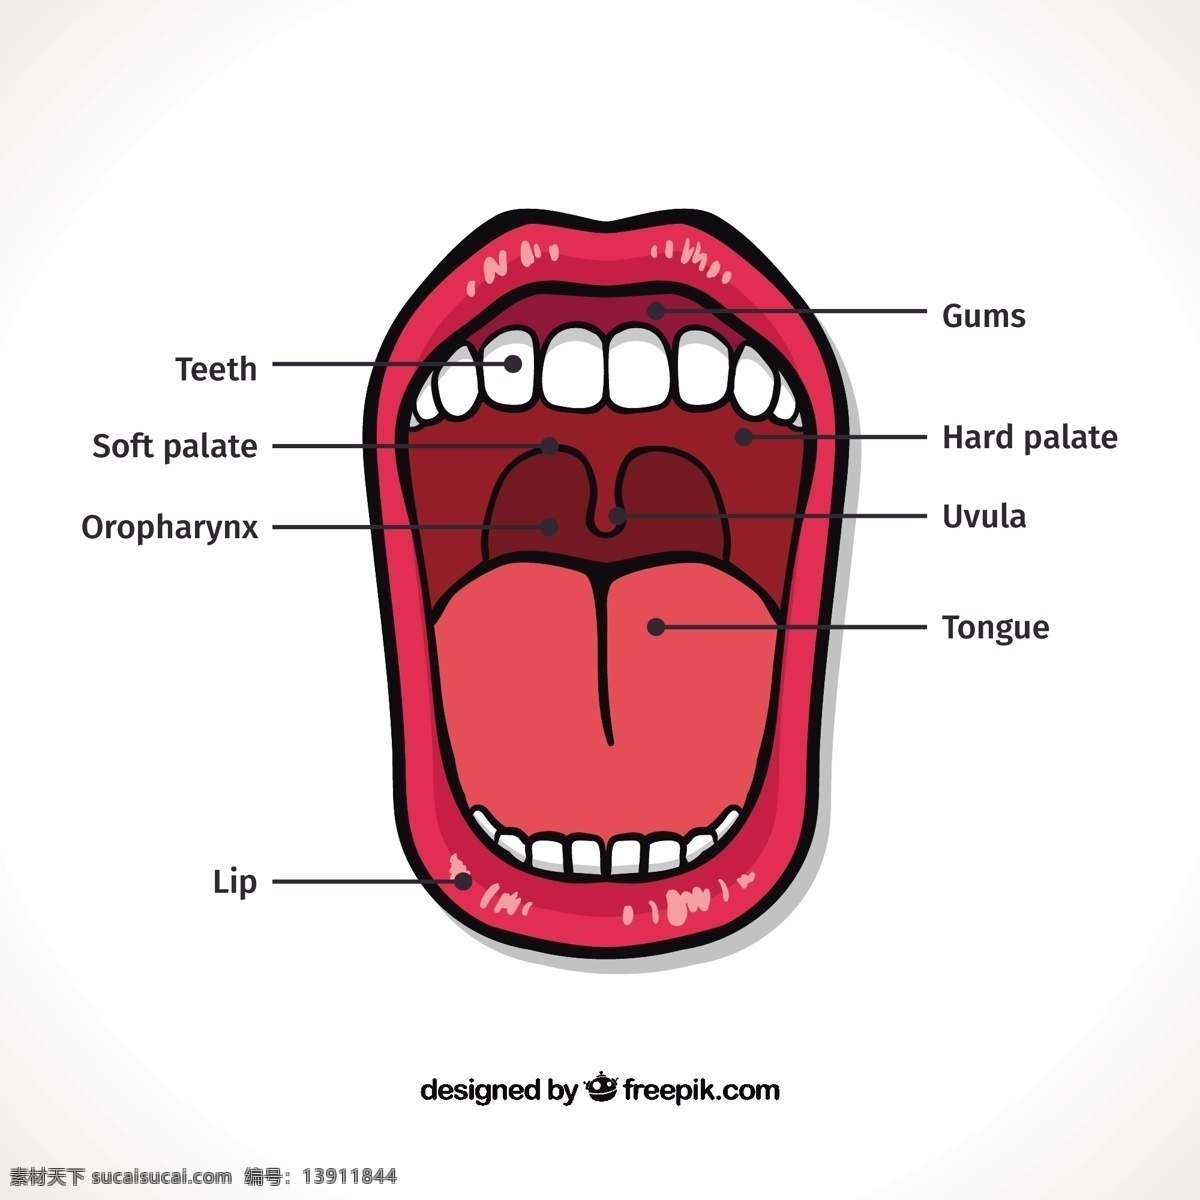 口分布图 图表 图形 嘴巴 牙医 牙齿 嘴唇 舌头图 软 硬 牙龈 口腔医学 白色